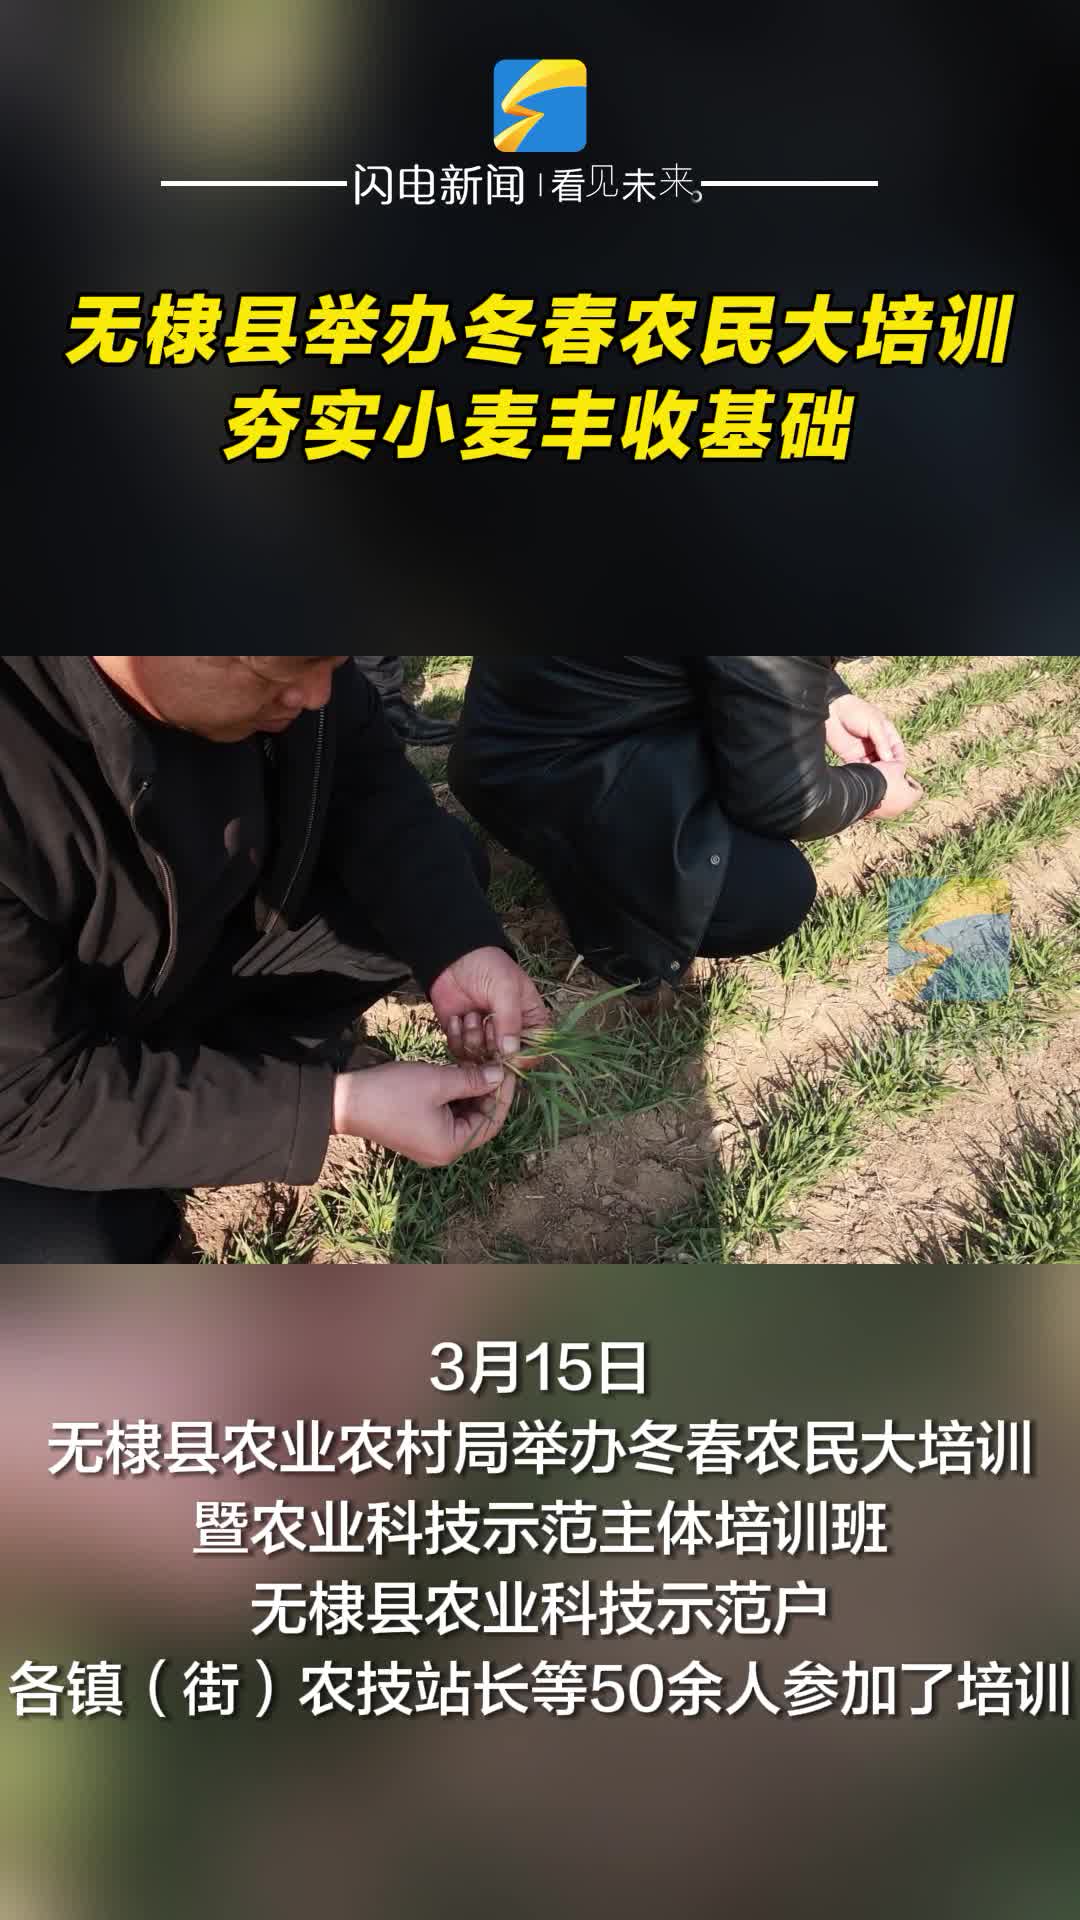 无棣县举办冬春农民大培训 夯实小麦丰收基础